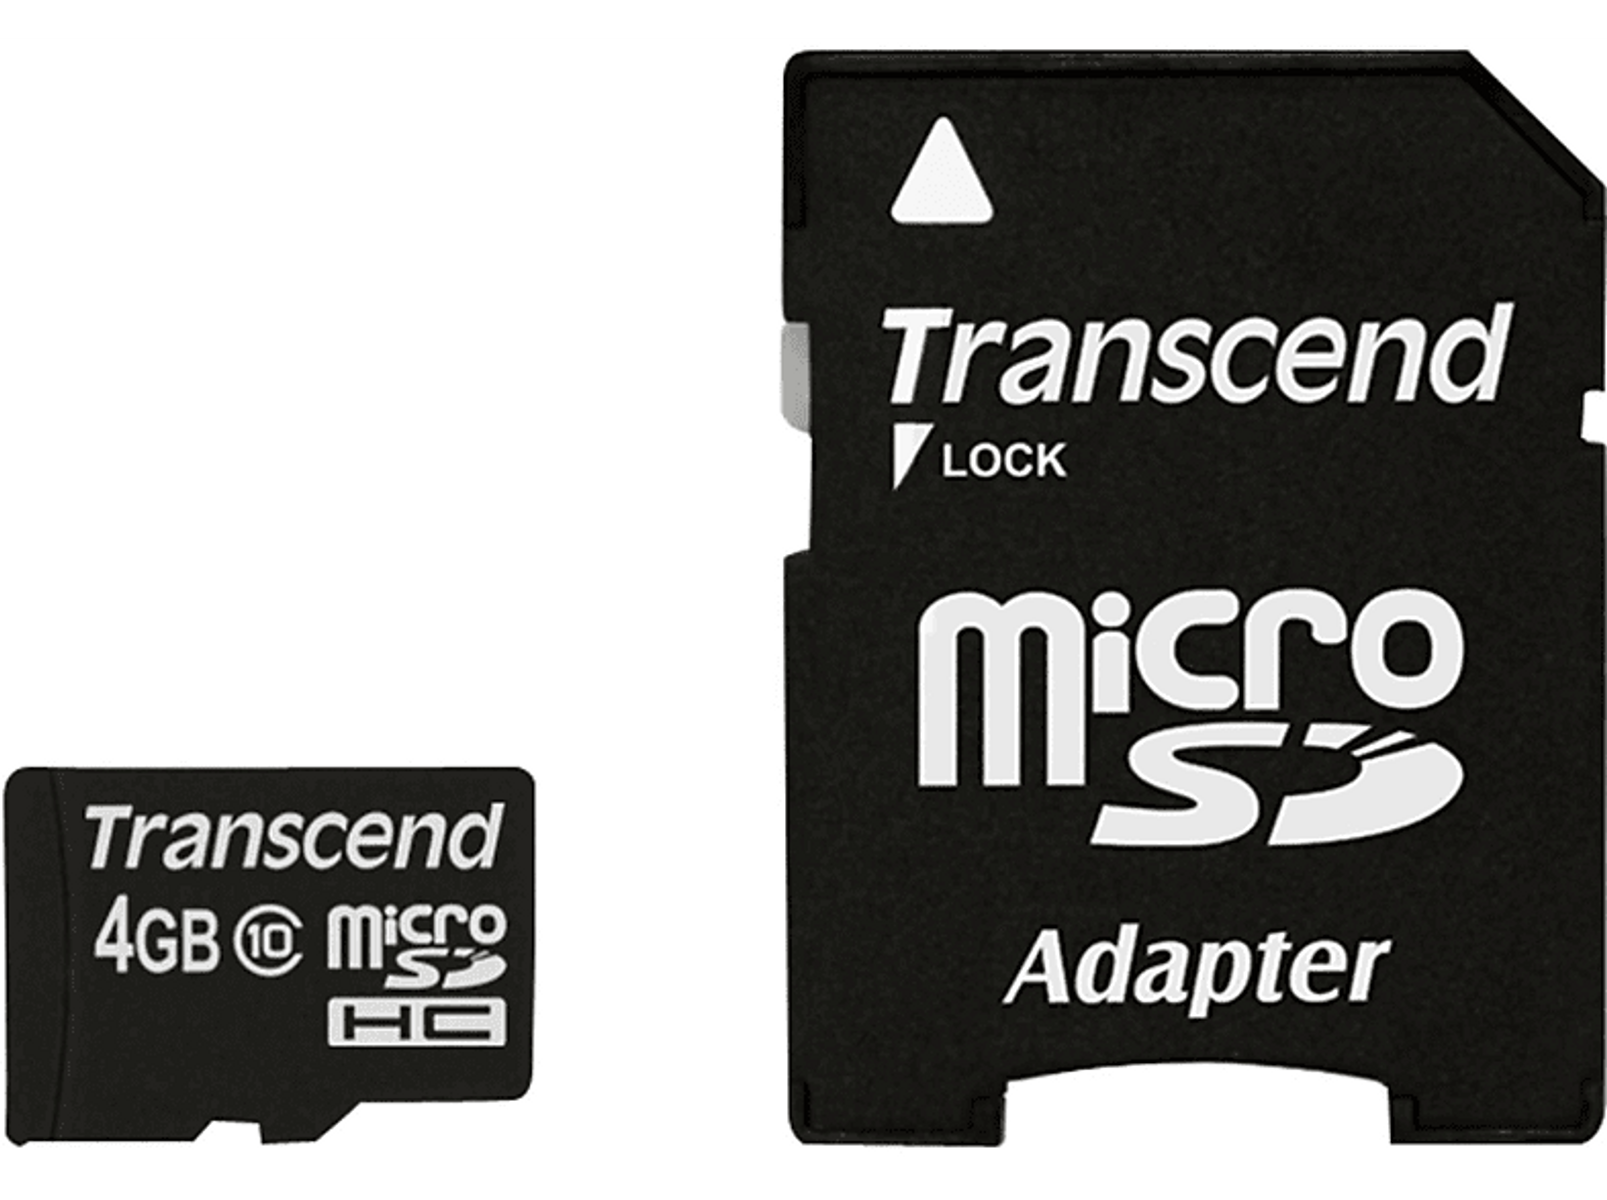 MB/s SD Speicherkarte, Micro-SDHC, GB, SDHC, TRANSCEND 10 Micro-SDXC, m00002MWKF, 4 Micro-SD,